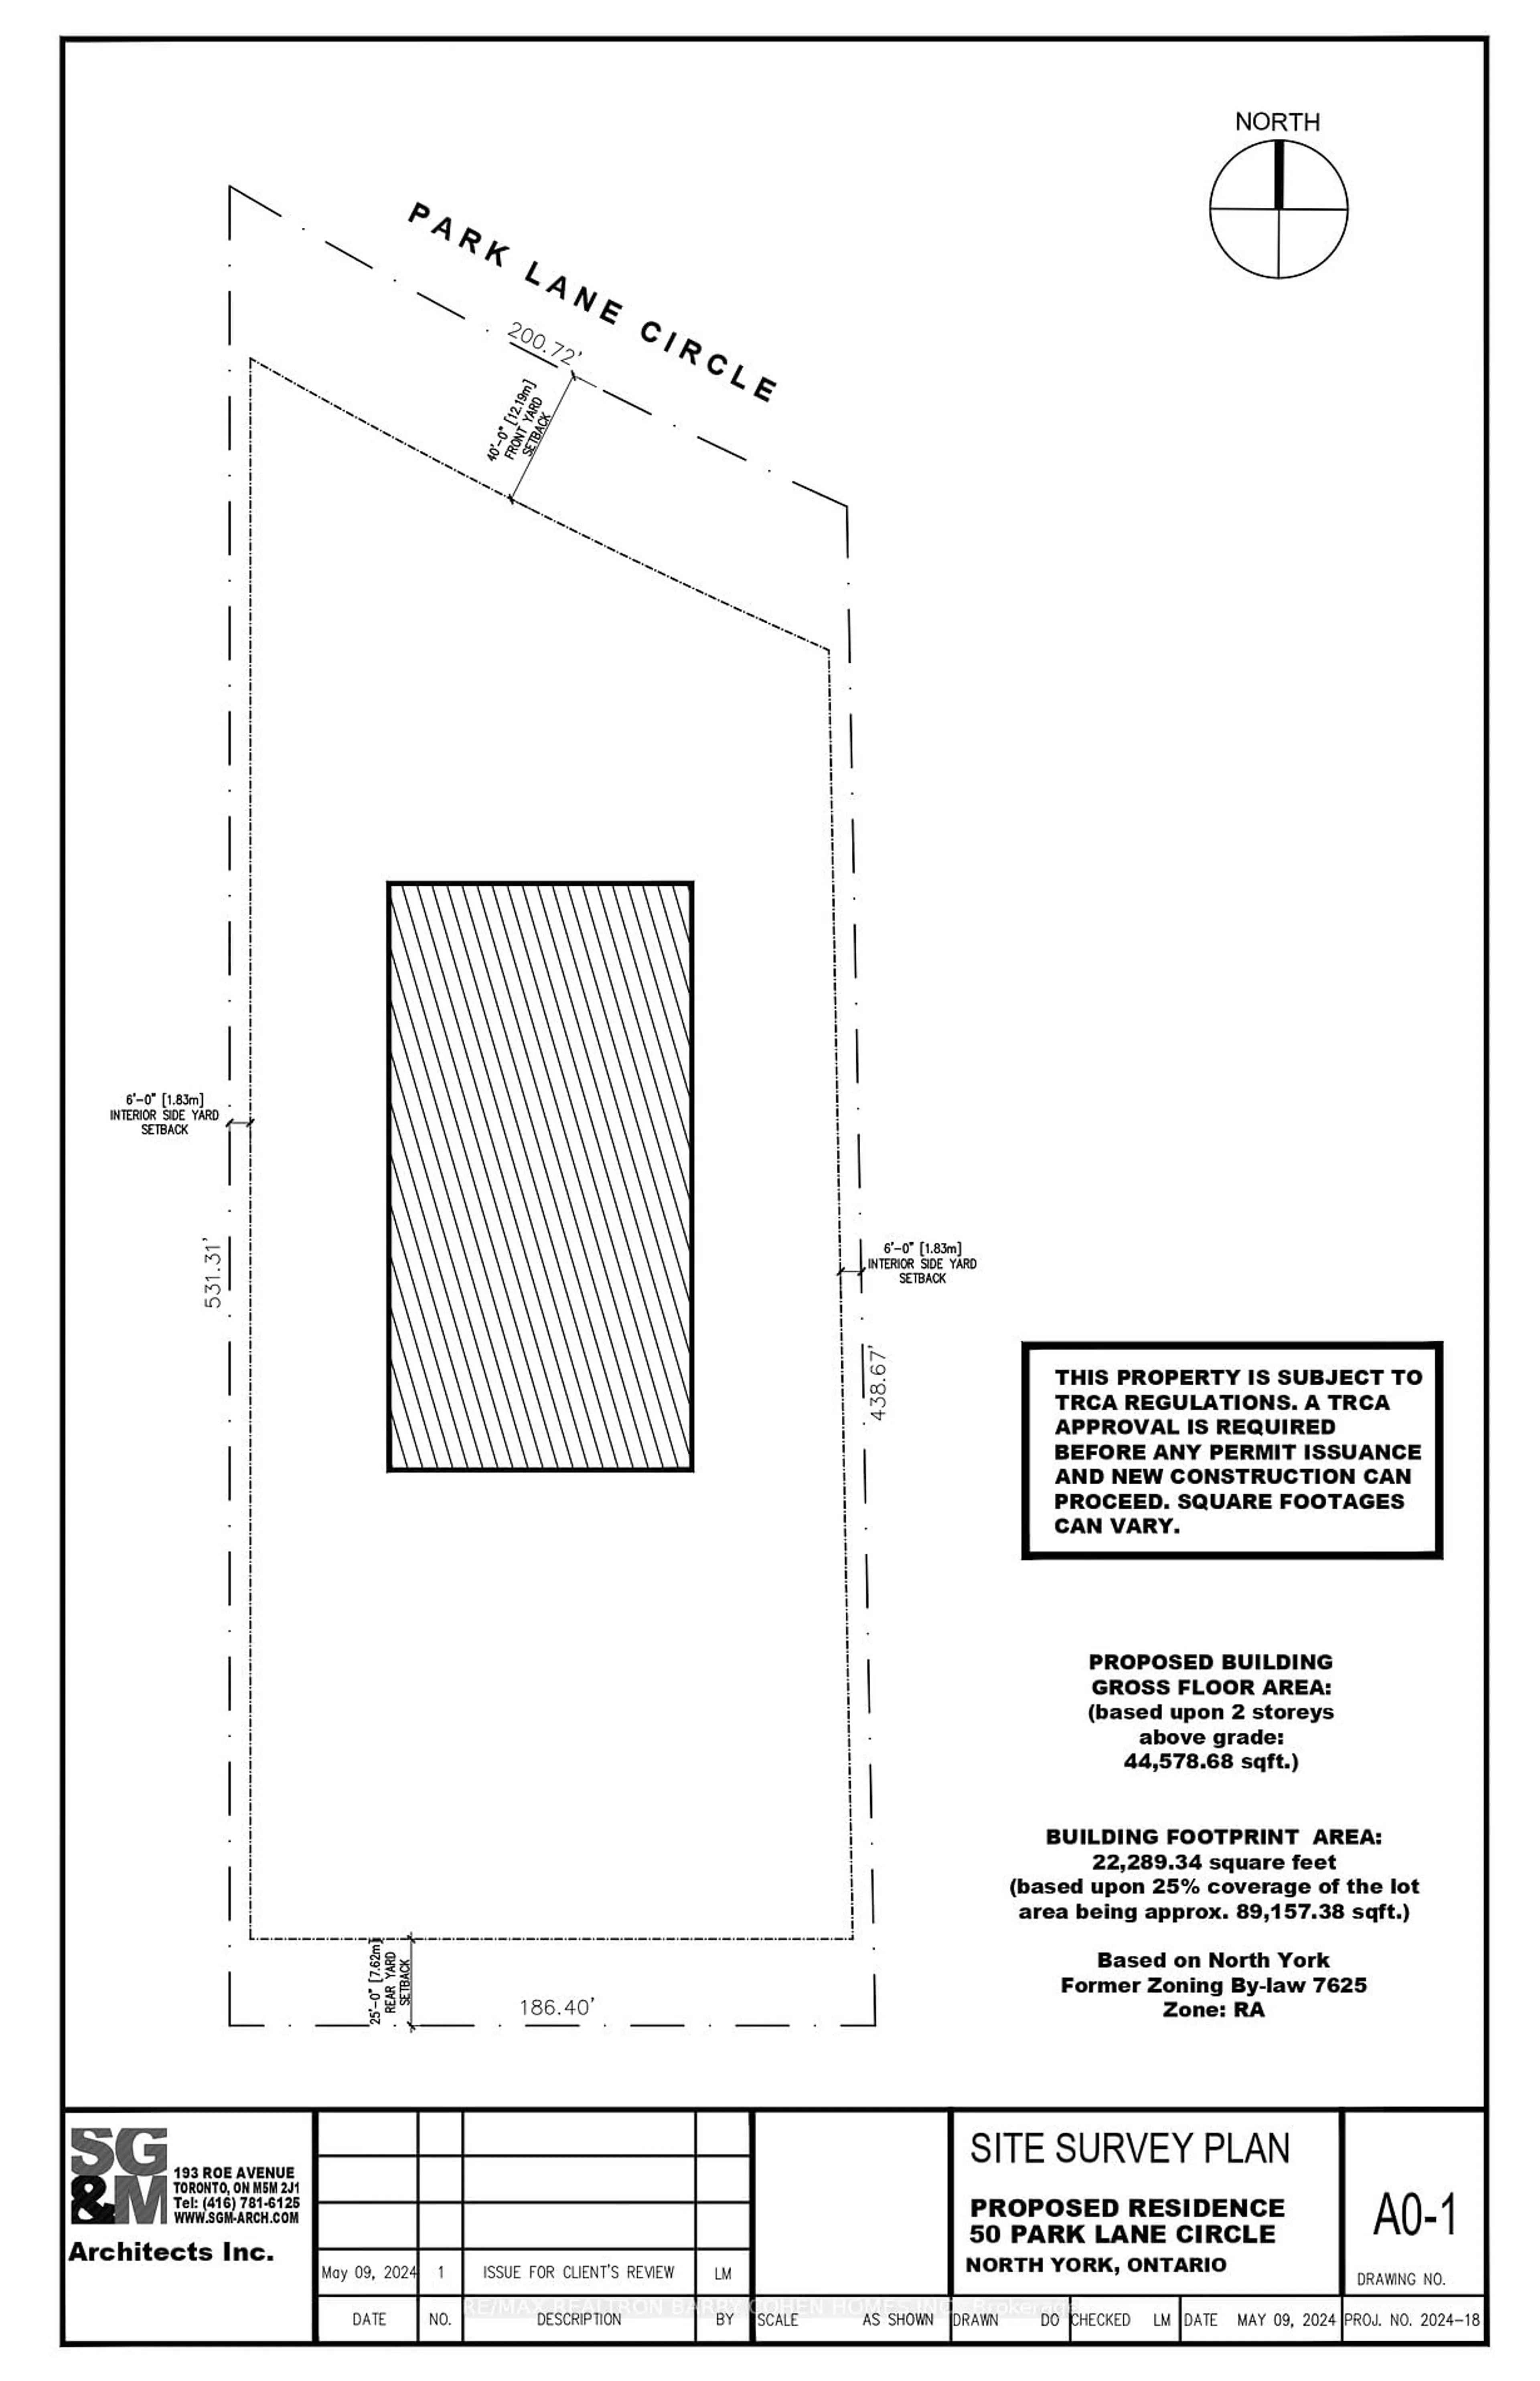 Floor plan for 50 Park Lane Circ, Toronto Ontario M3C 2N2